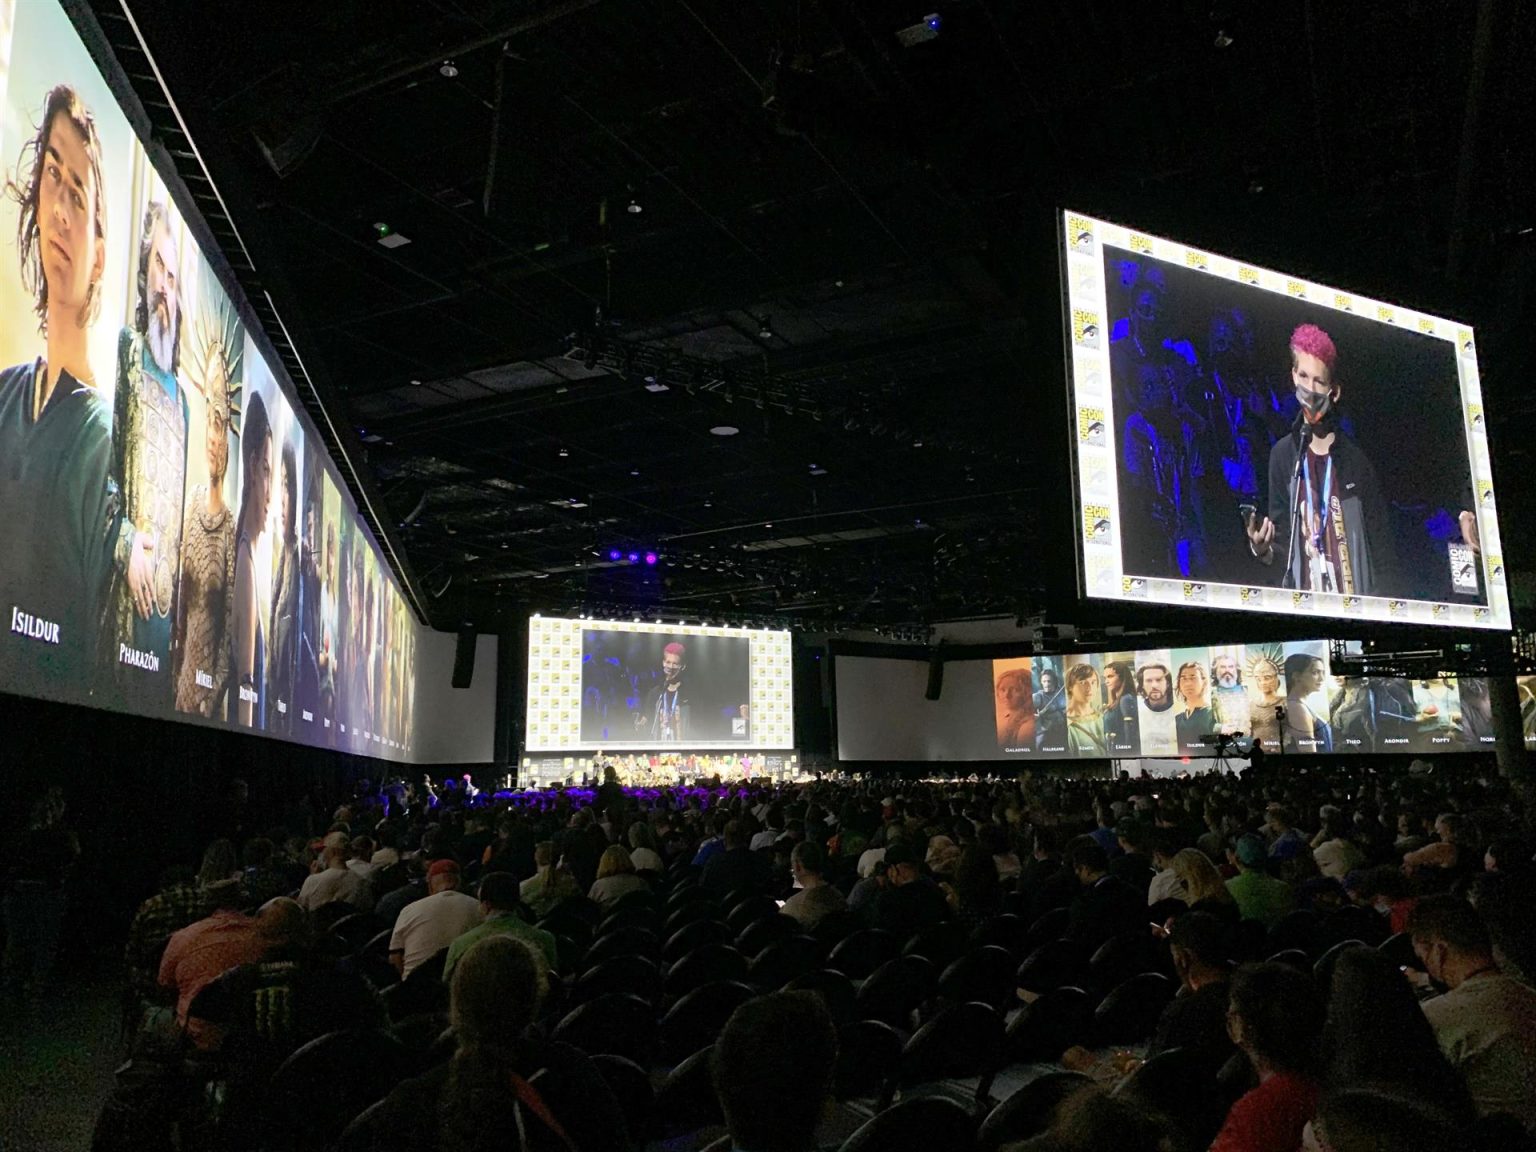 Cientos de personas asisten a la presentación de la serie "The Lord Of The Rings: The Rings of Power" en el Hall H de la Comic-Con, hoy en San Diego, California (EE.UU.). EFE/Javier Romualdo